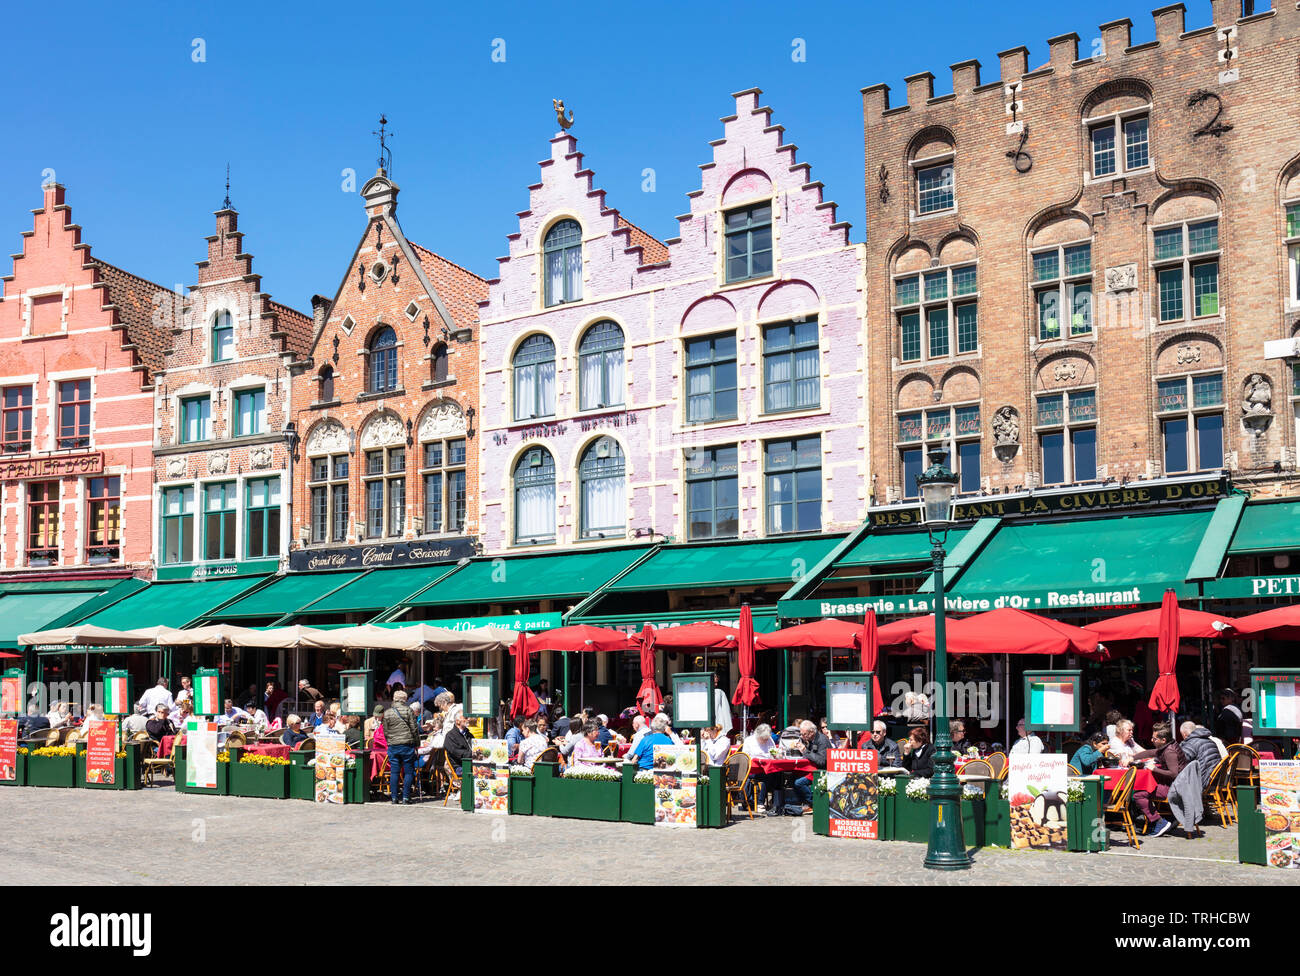 Gli edifici di vecchia costruzione ora caffè e ristoranti con ornati gables nella storica piazza Markt nel centro di Bruges Belgio Fiandre occidentale Europa dell'UE Foto Stock